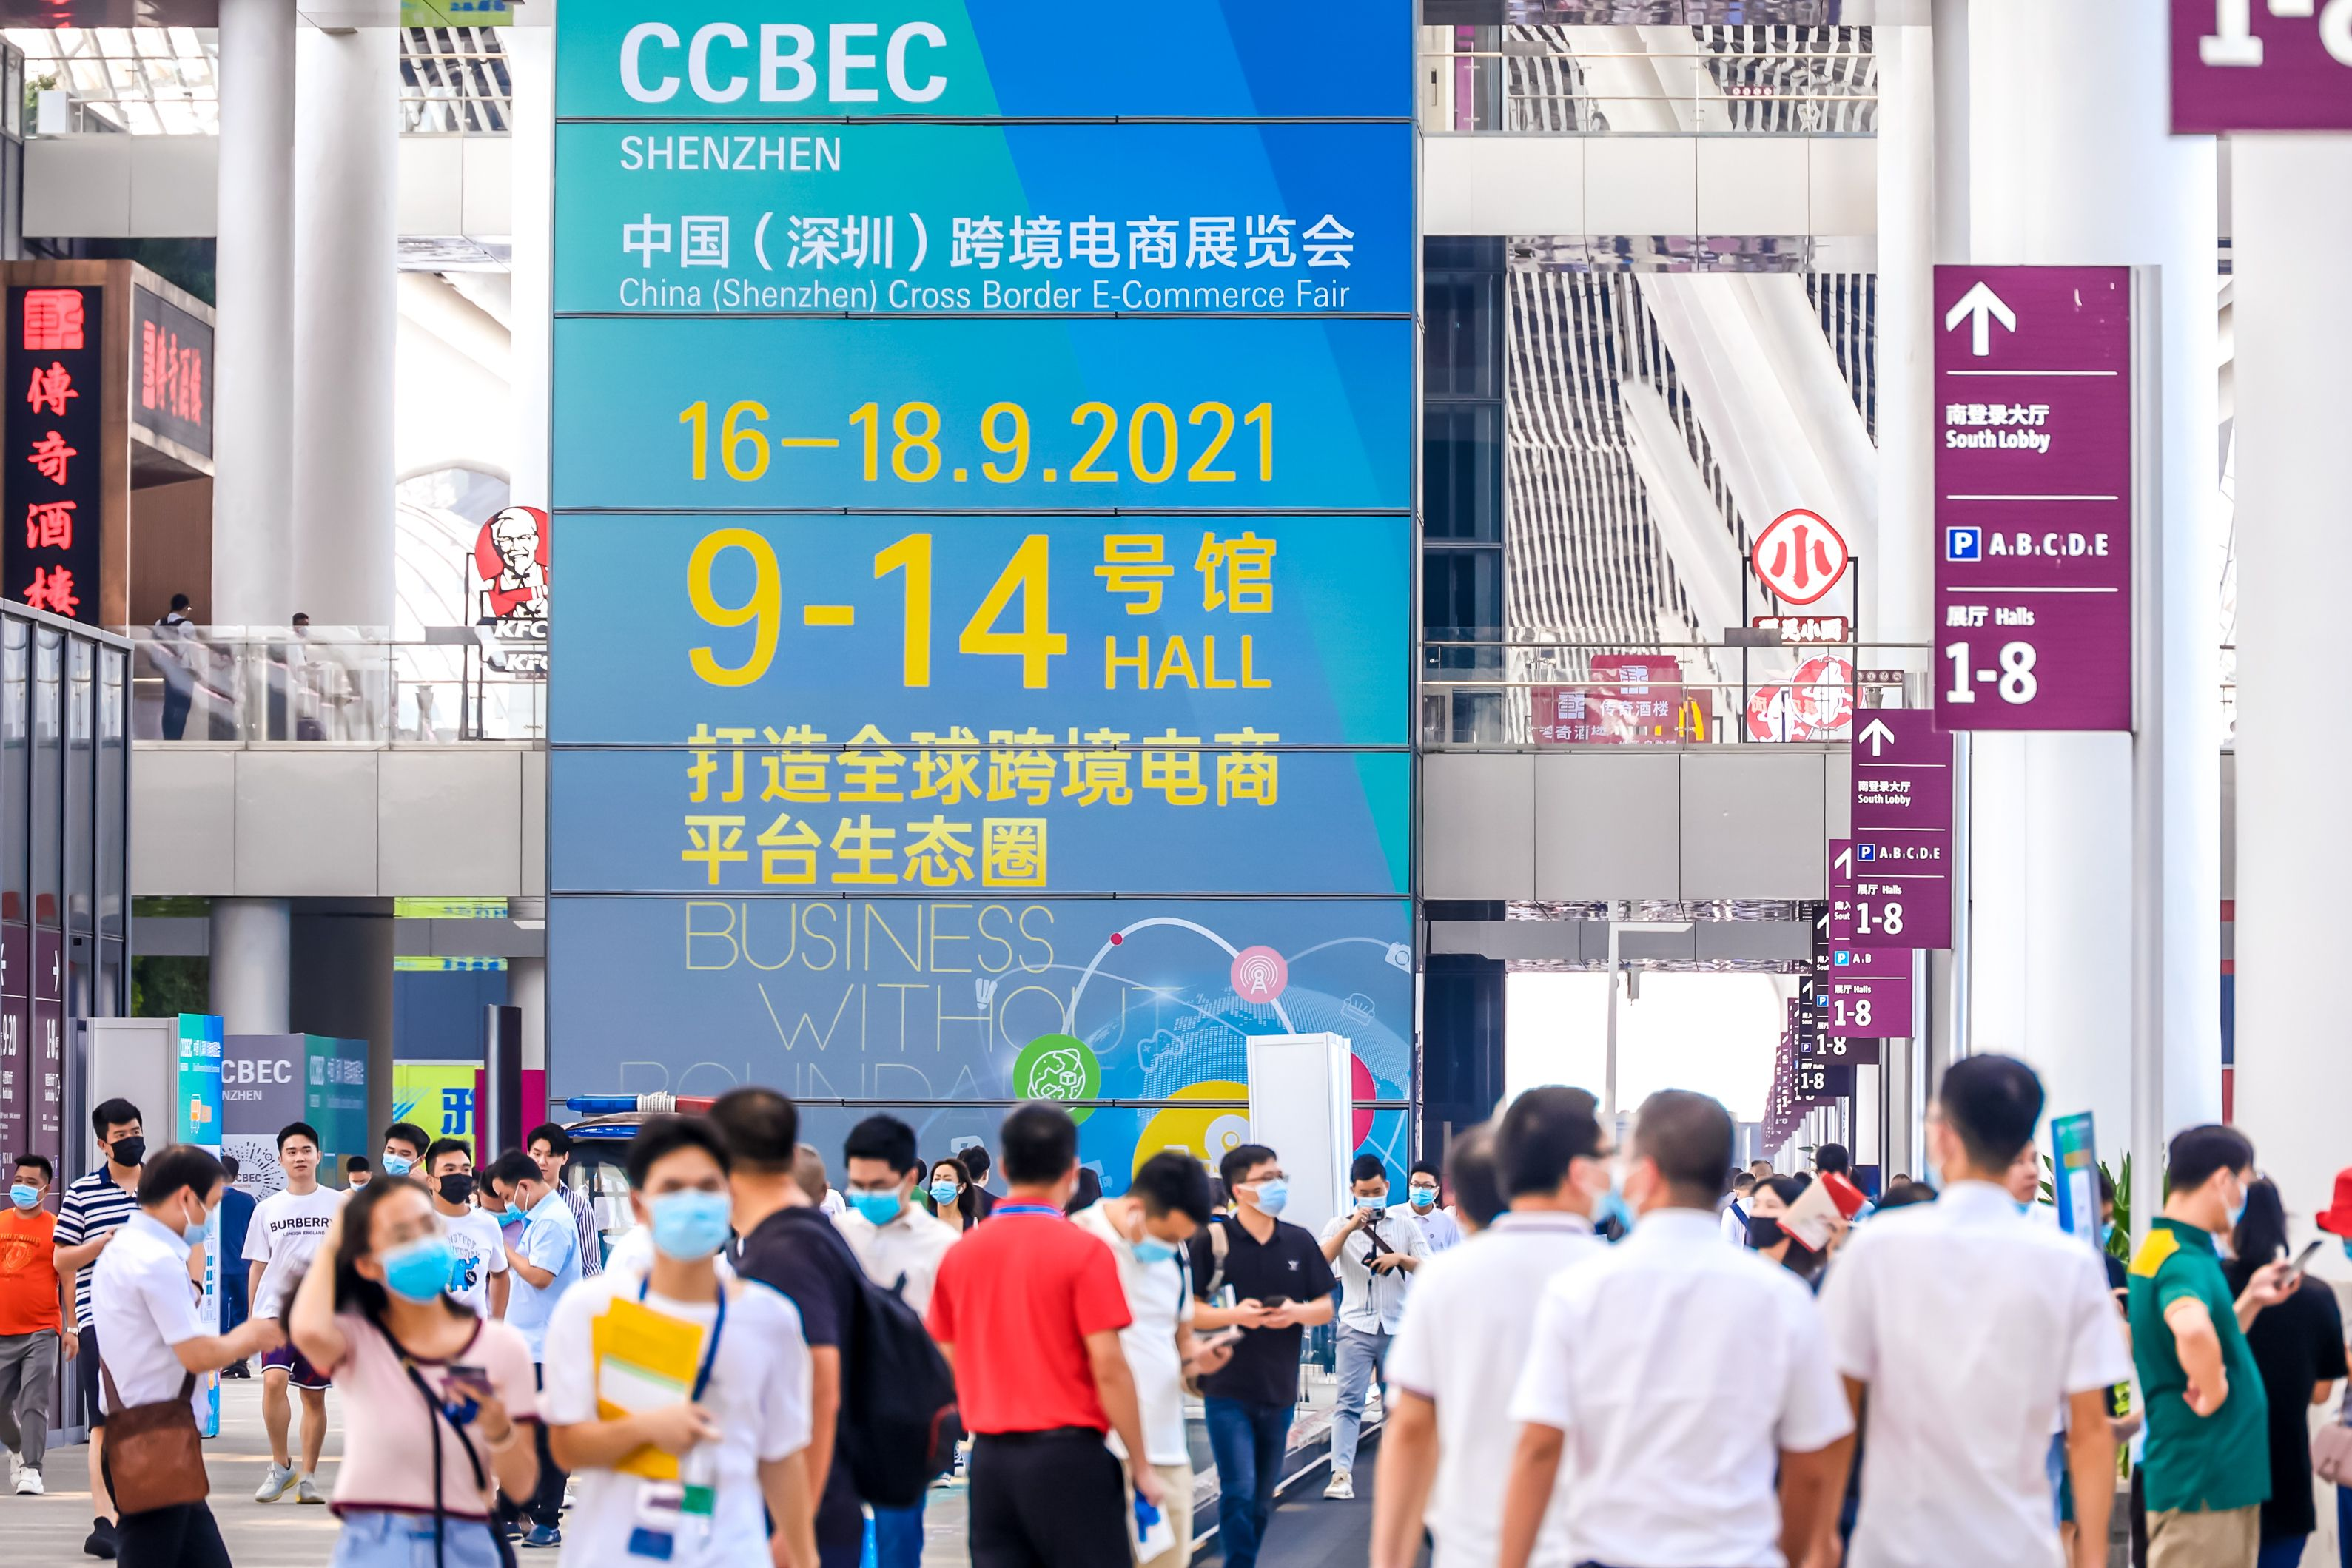 2022最火爆的跨境电商展览会即将开幕3月24日深圳国际会展中心等你来